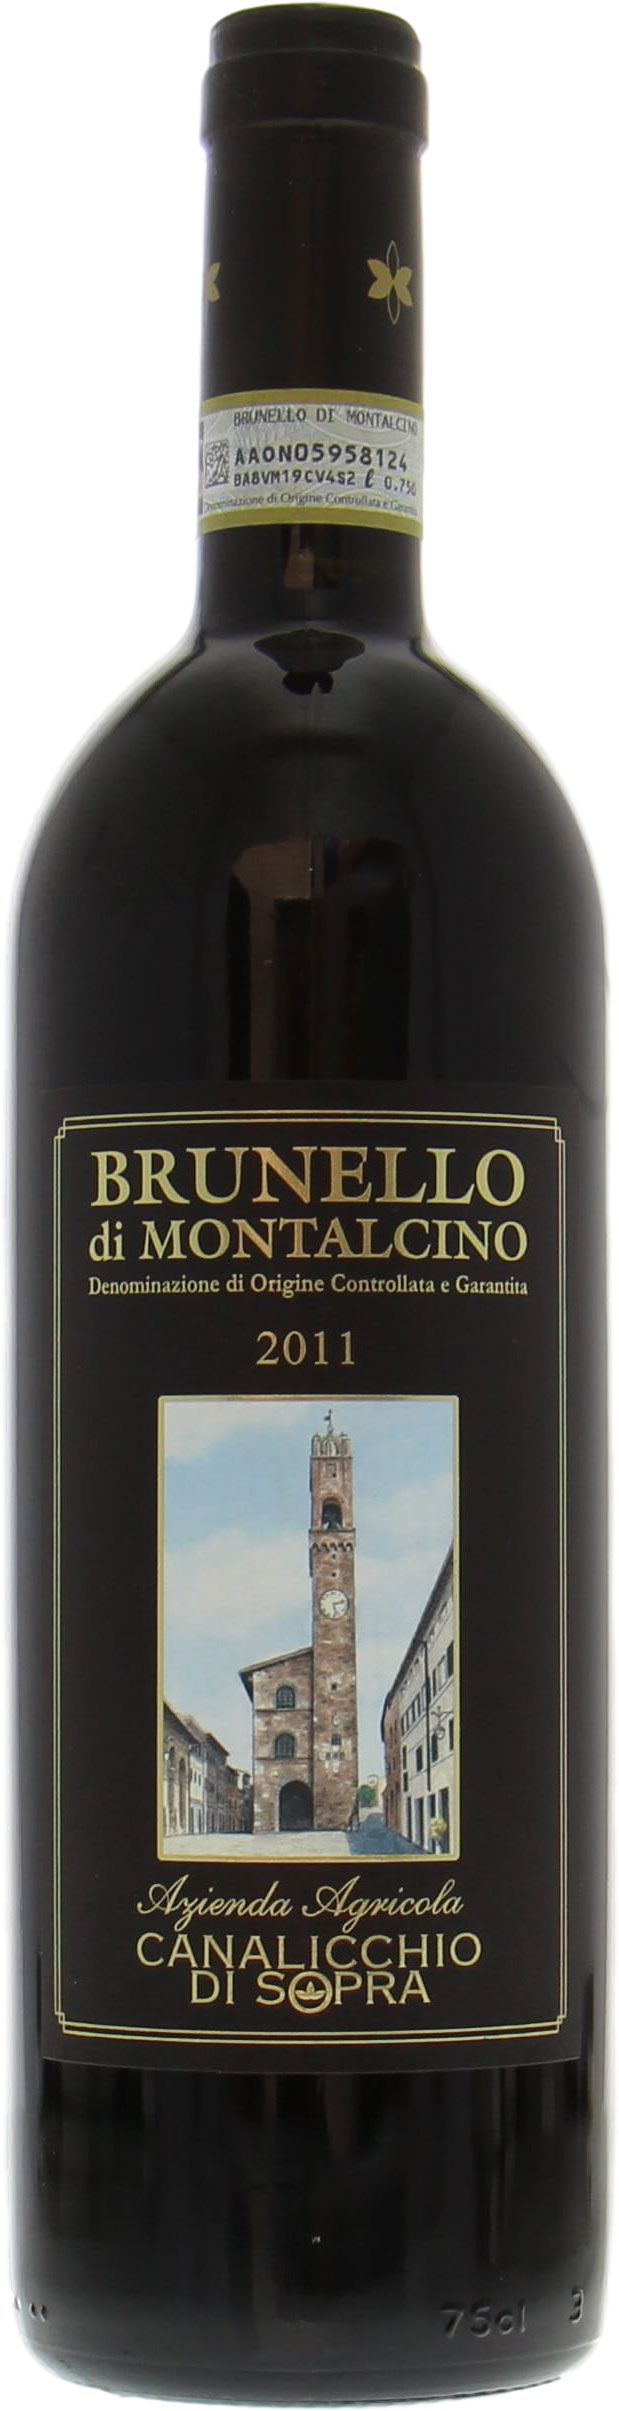 Canalicchio di Sopra - Brunello di Montalcino 2011 Perfect